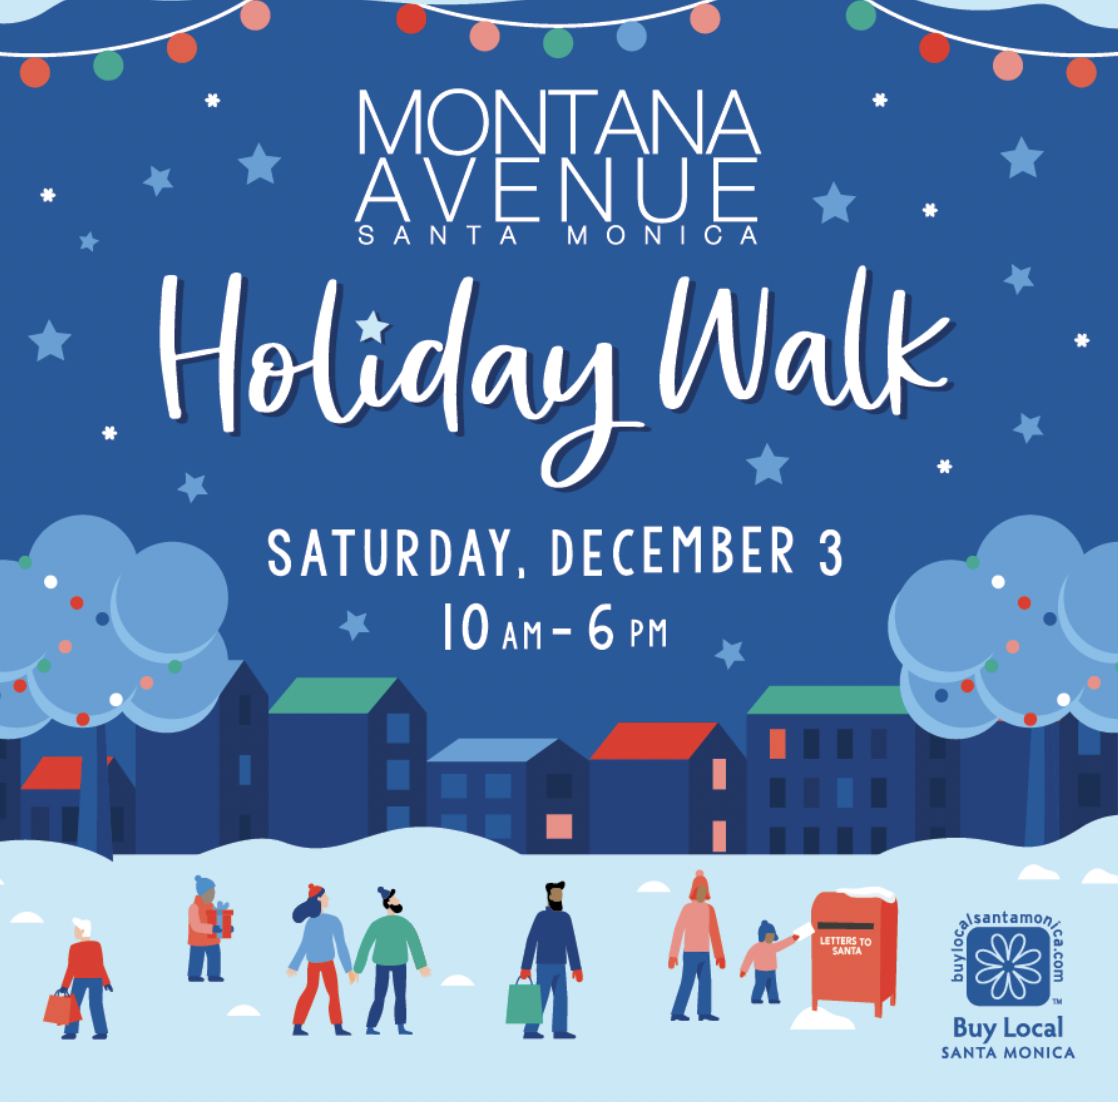 Holiday Walk on Montana Avenue